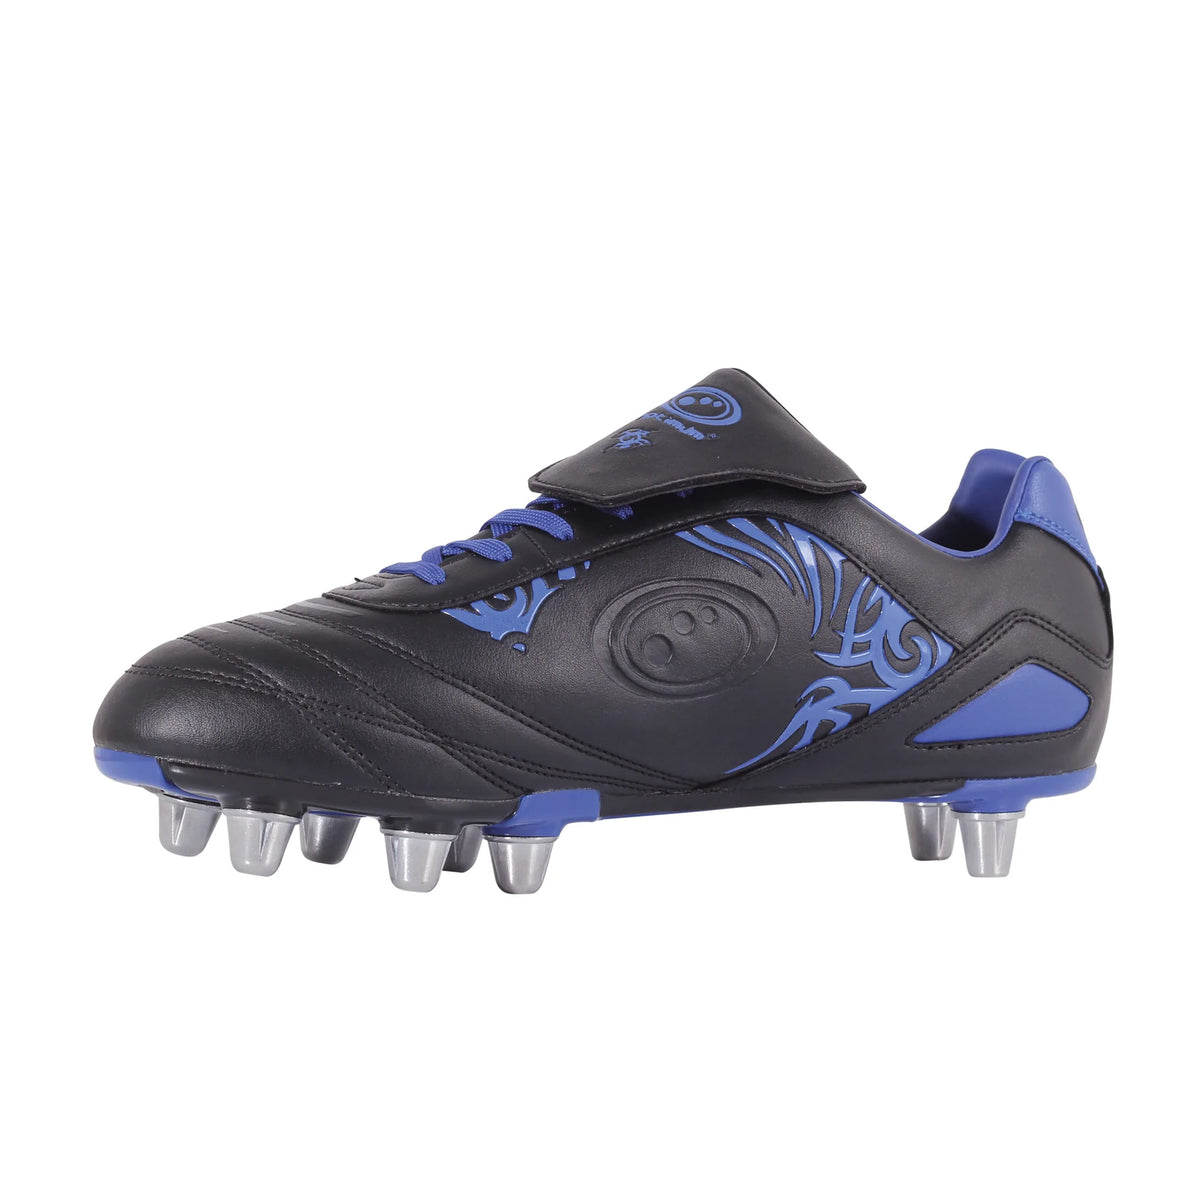 Optimum Razor Rugby Boots: Black/Blue